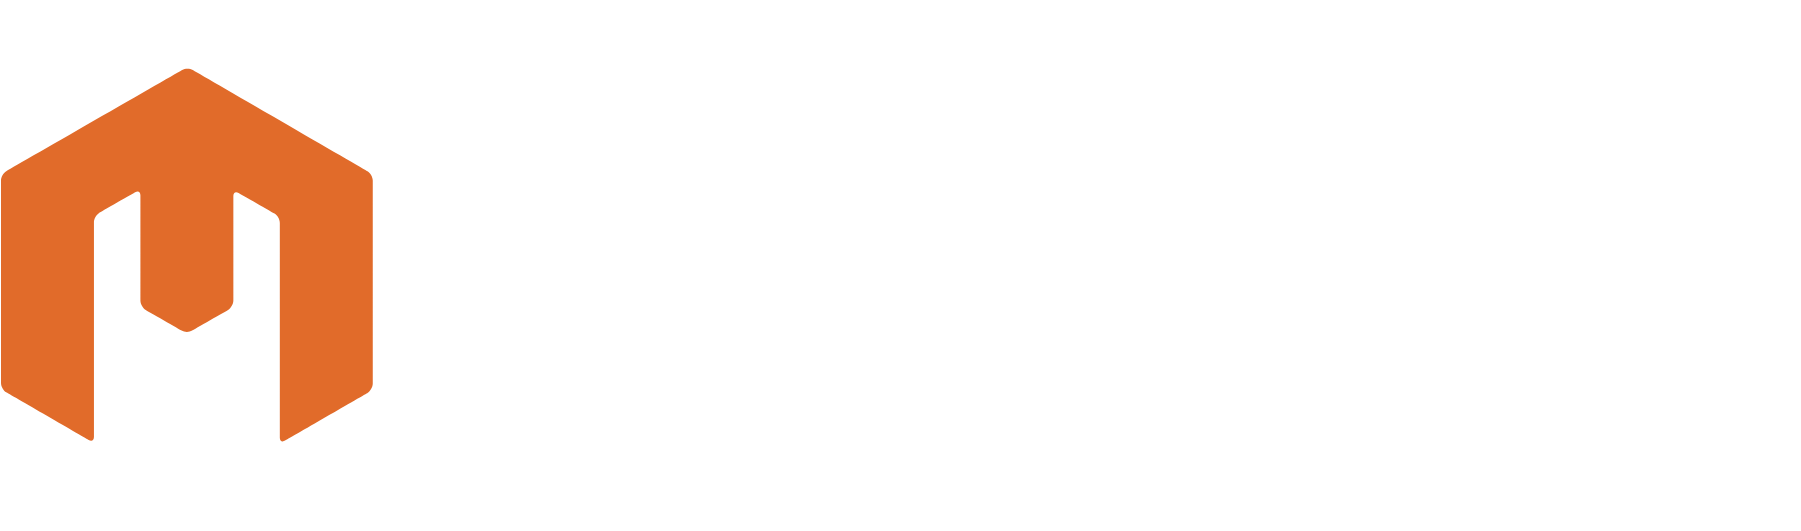 Mirion Technologies Logo groß für dunkle Hintergründe (transparentes PNG)